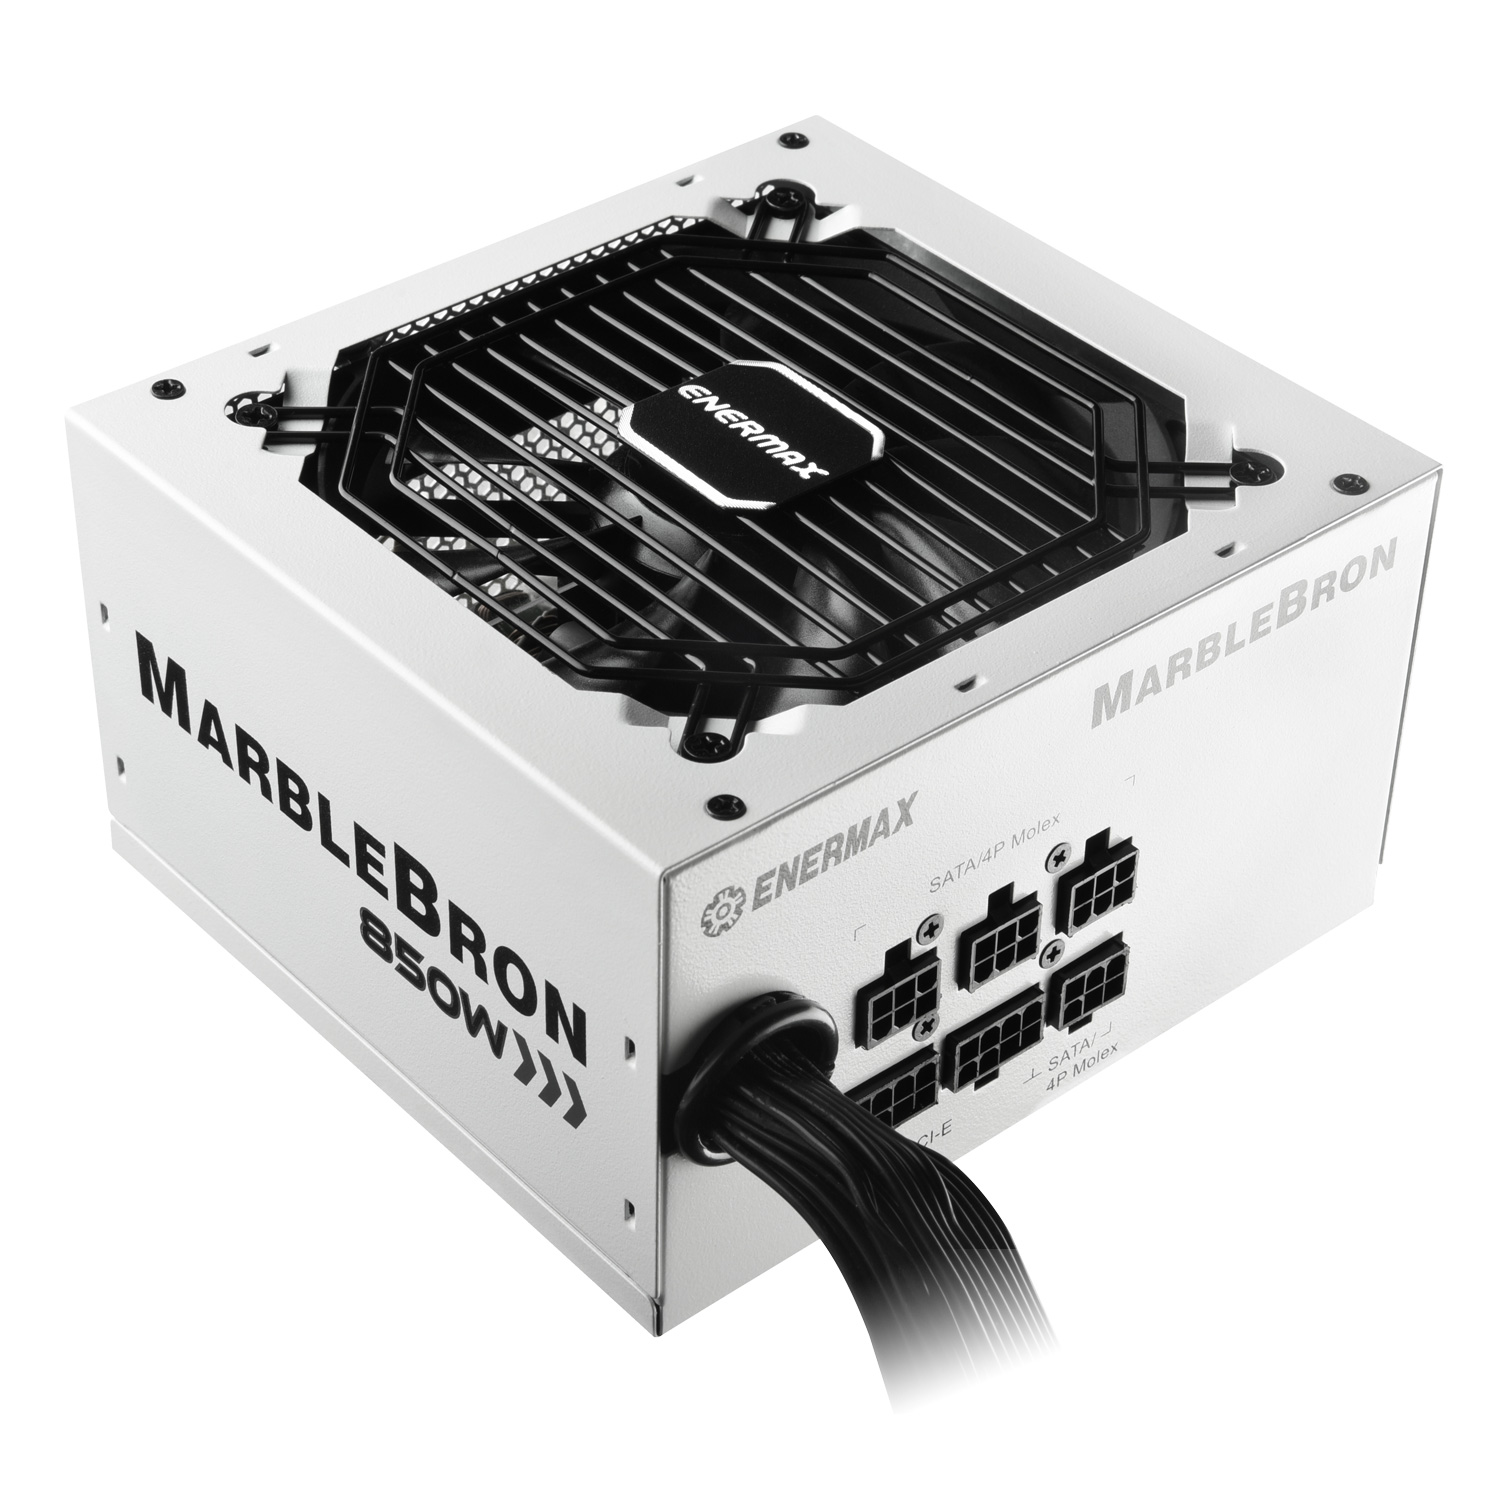 MARBLEBRON 850 Watt 80 PLUS Bronze Semi-Modular Power Supply-white-5